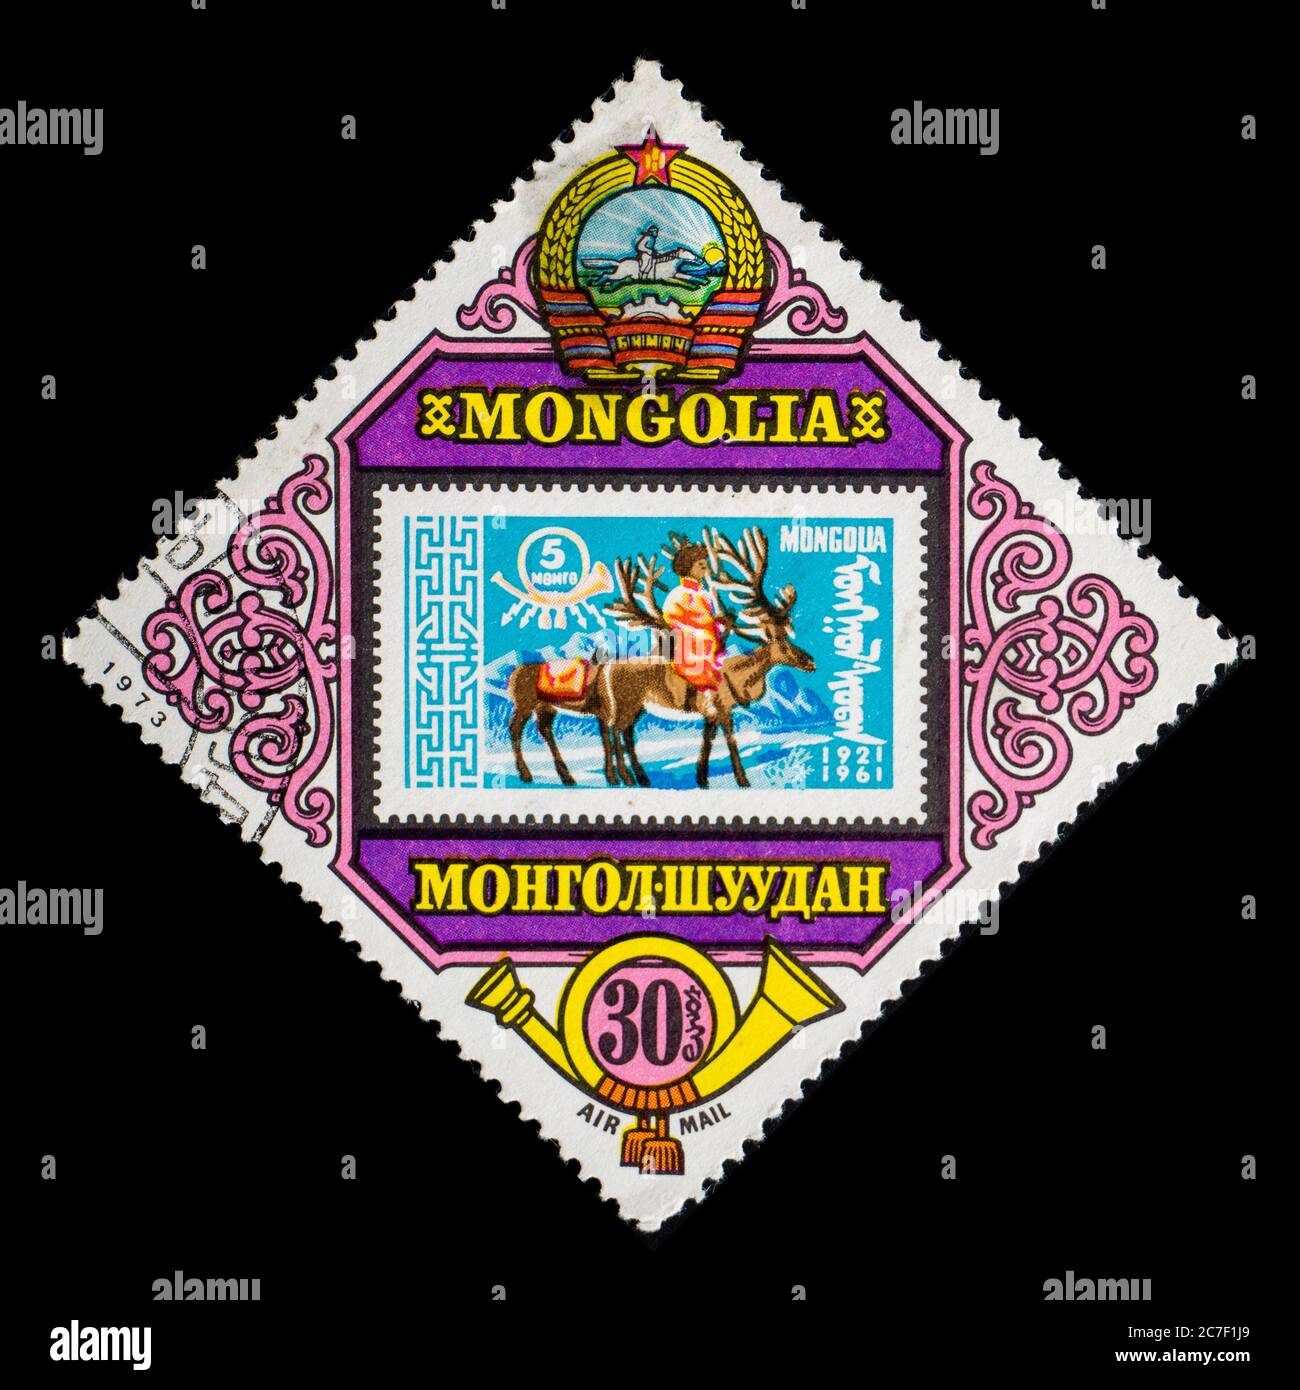 MONGOLIE - VERS 1973: Timbre-poste de Mongolie montrant un autre timbre avec deux déers Banque D'Images